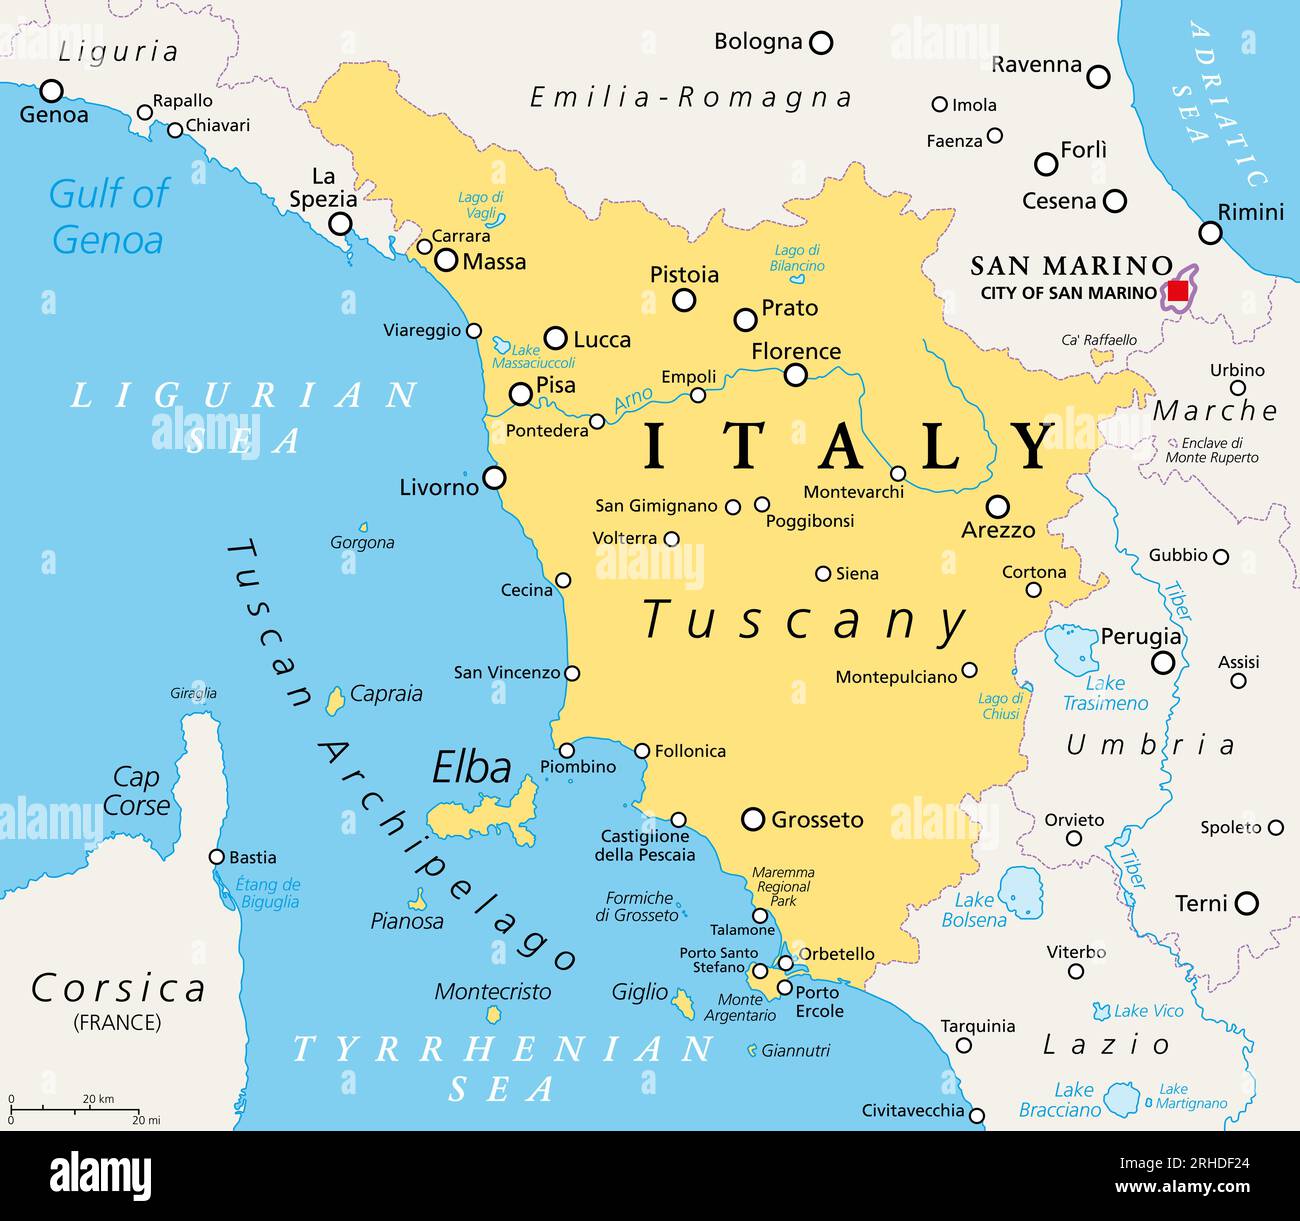 Toskana, Region in Mittelitalien, politische Karte mit vielen beliebten Touristenattraktionen wie Florenz, Castiglione della Pescaia, Pisa, Grosseto und Siena. Stockfoto